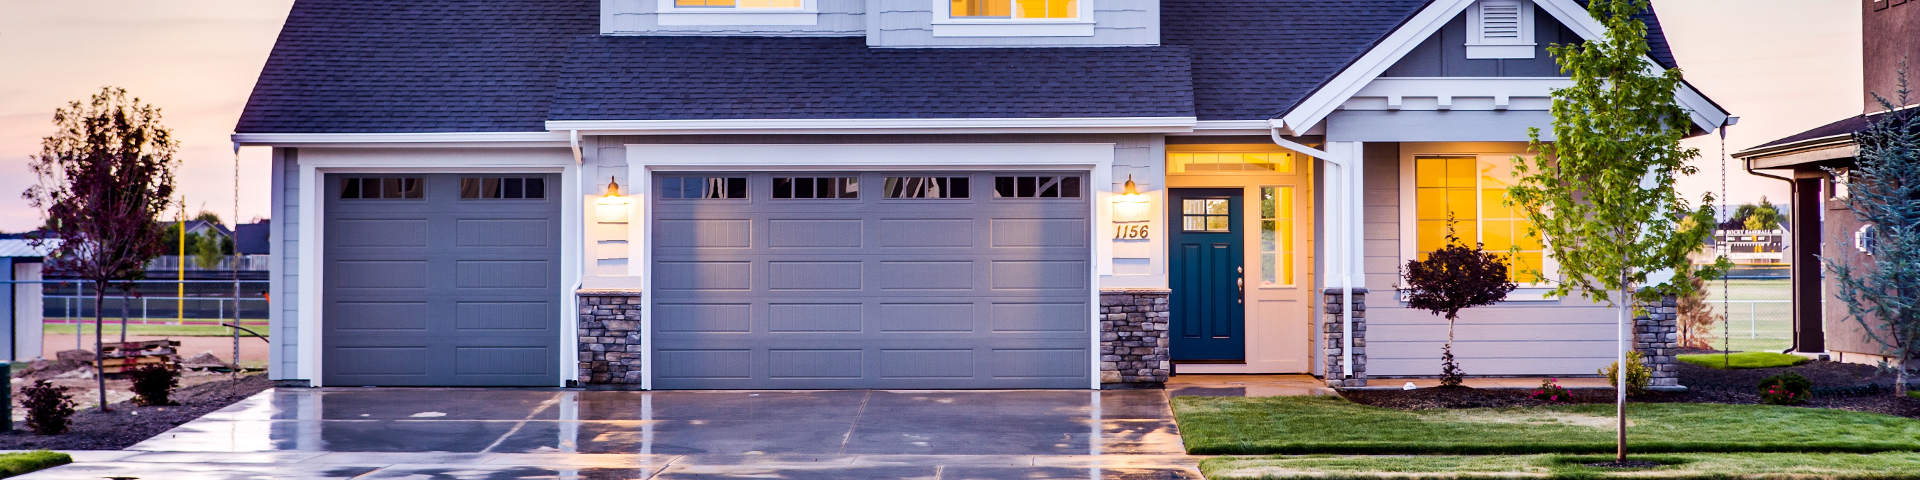 Poradnik użytkowania i konserwacji bram garażowych - ROLETEO Serwis rolet, okien, drzwi i bram garażowych